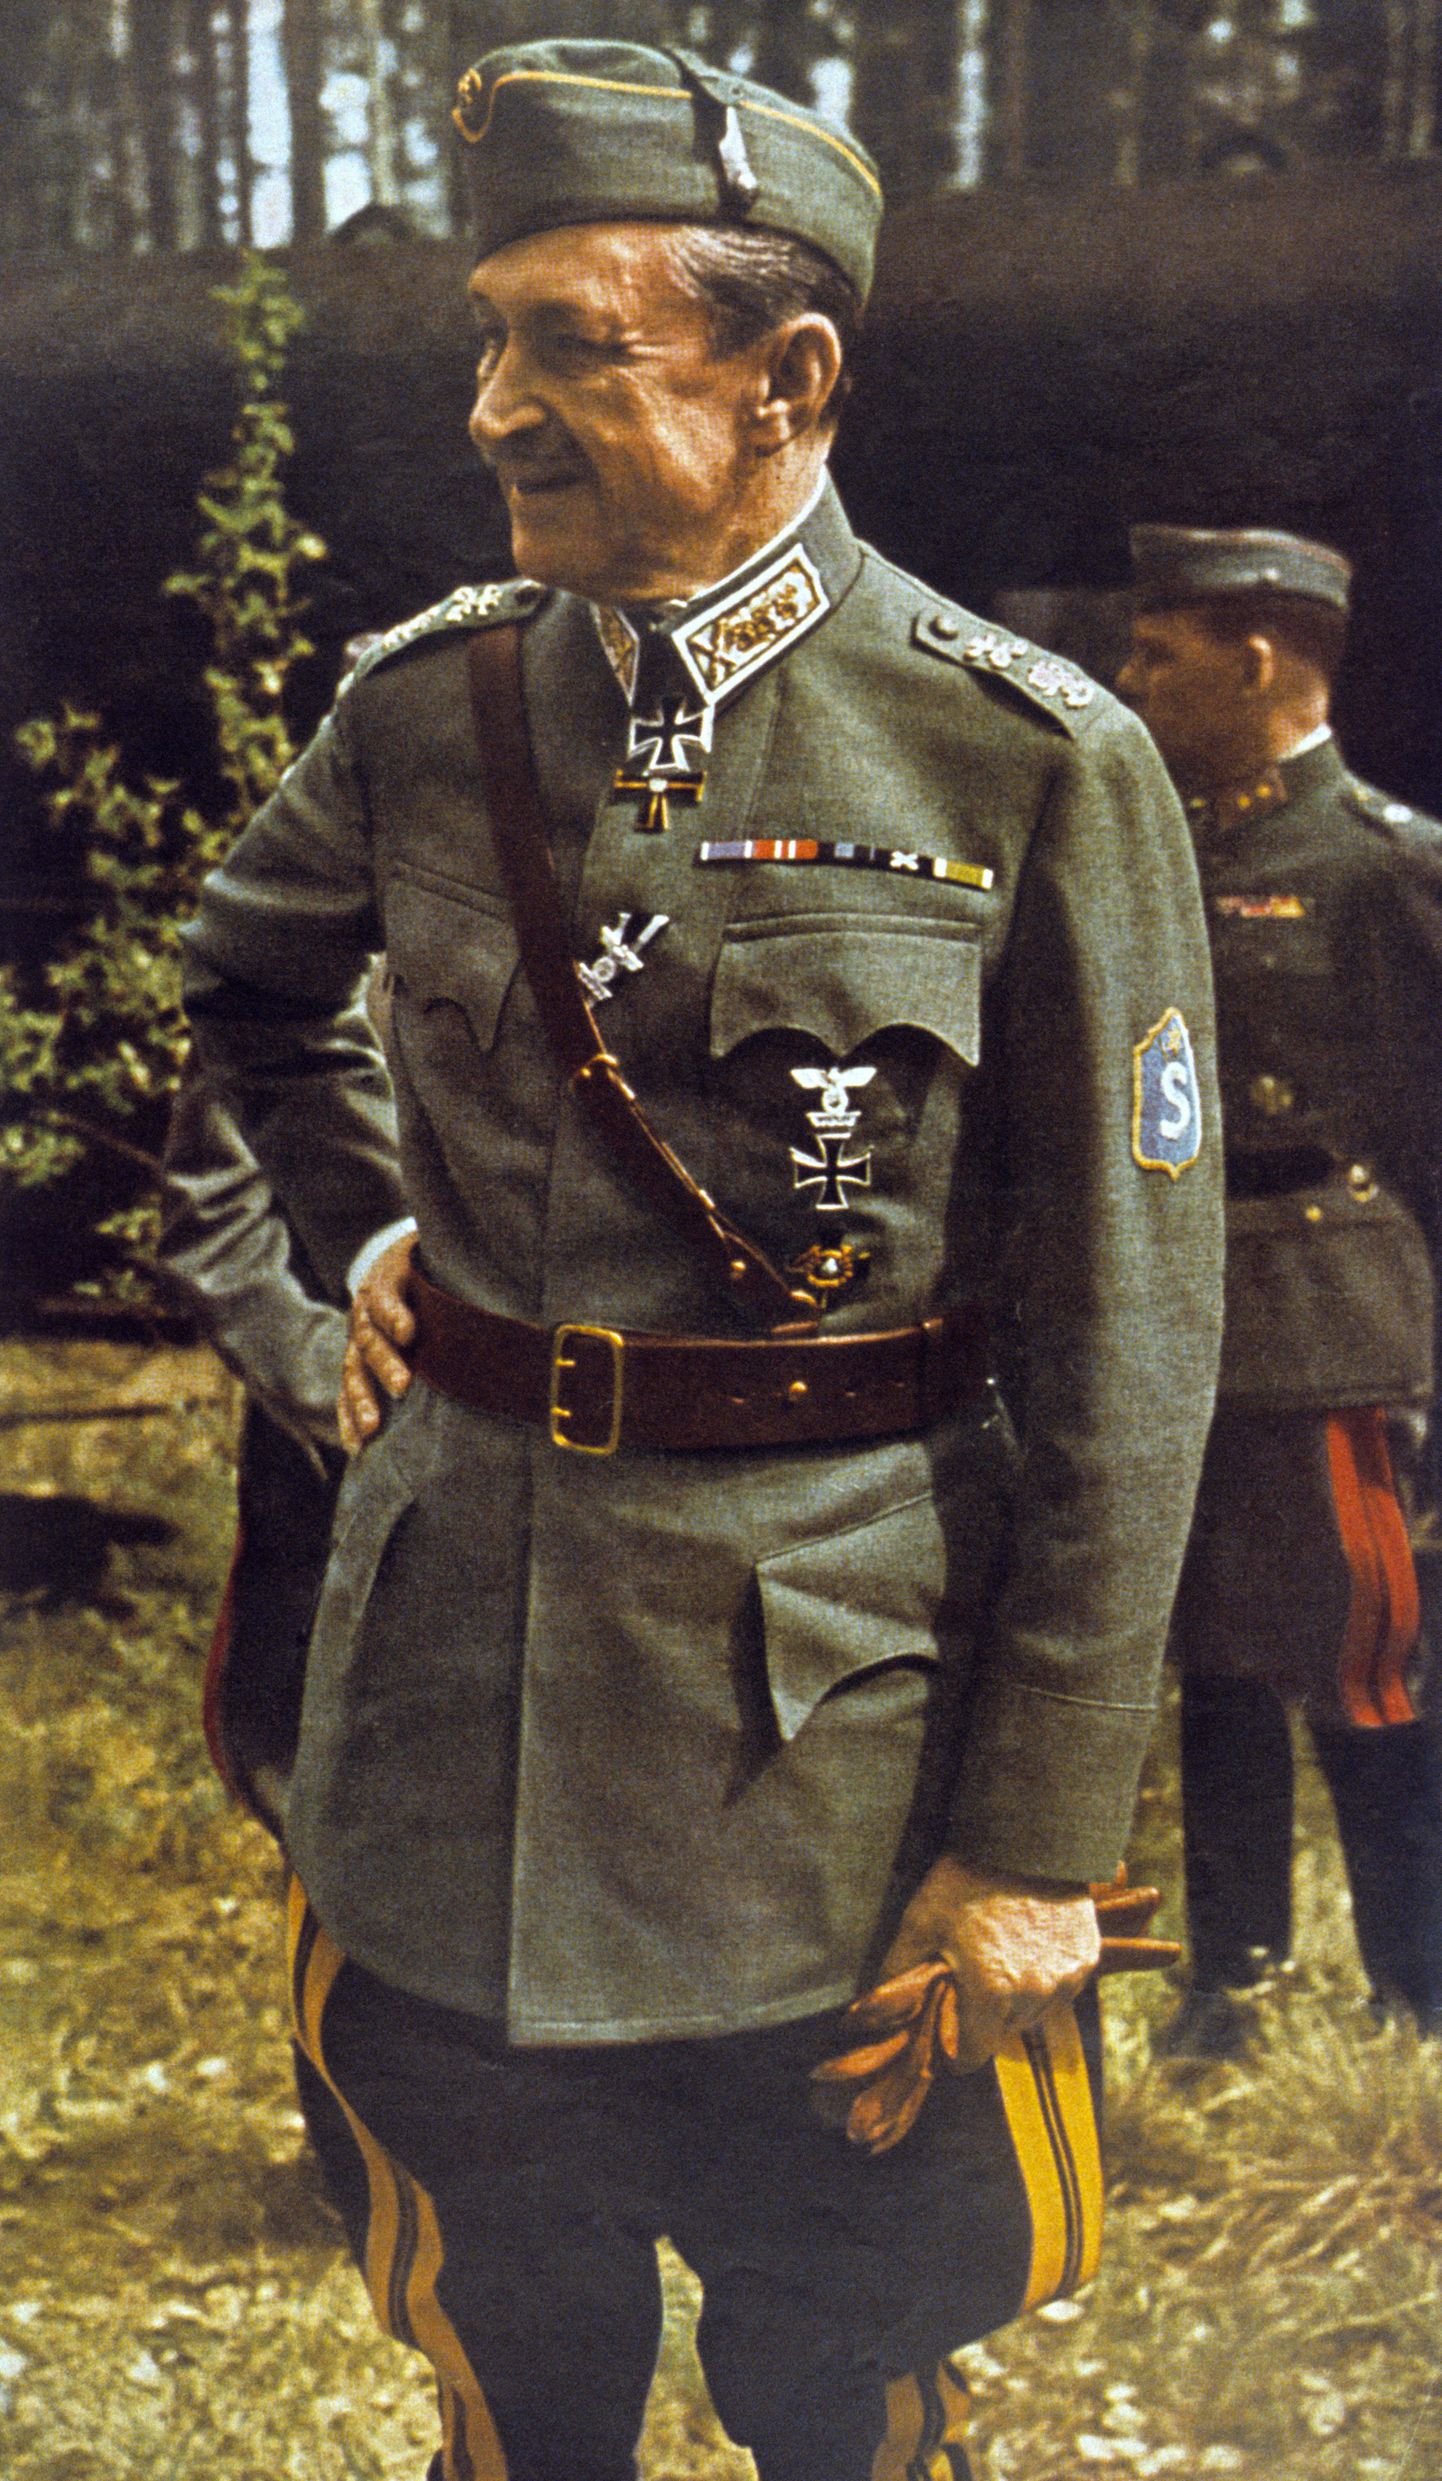 Talvesõja ajal oli Mannerheim Soome kaitsejõudude juhataja, marssali tiitli sai 1942. aastal. 
Perioodiks 1944–1946 sai Mannerheimist eriseadusega ka Soome president. Teise maailmasõja lõppedes oli üleval ka oht, et Nõukogude Liit võib nõuda Mannerheimi karistamist sõjakurjategijana, kuid seda suudeti siiski vältida.